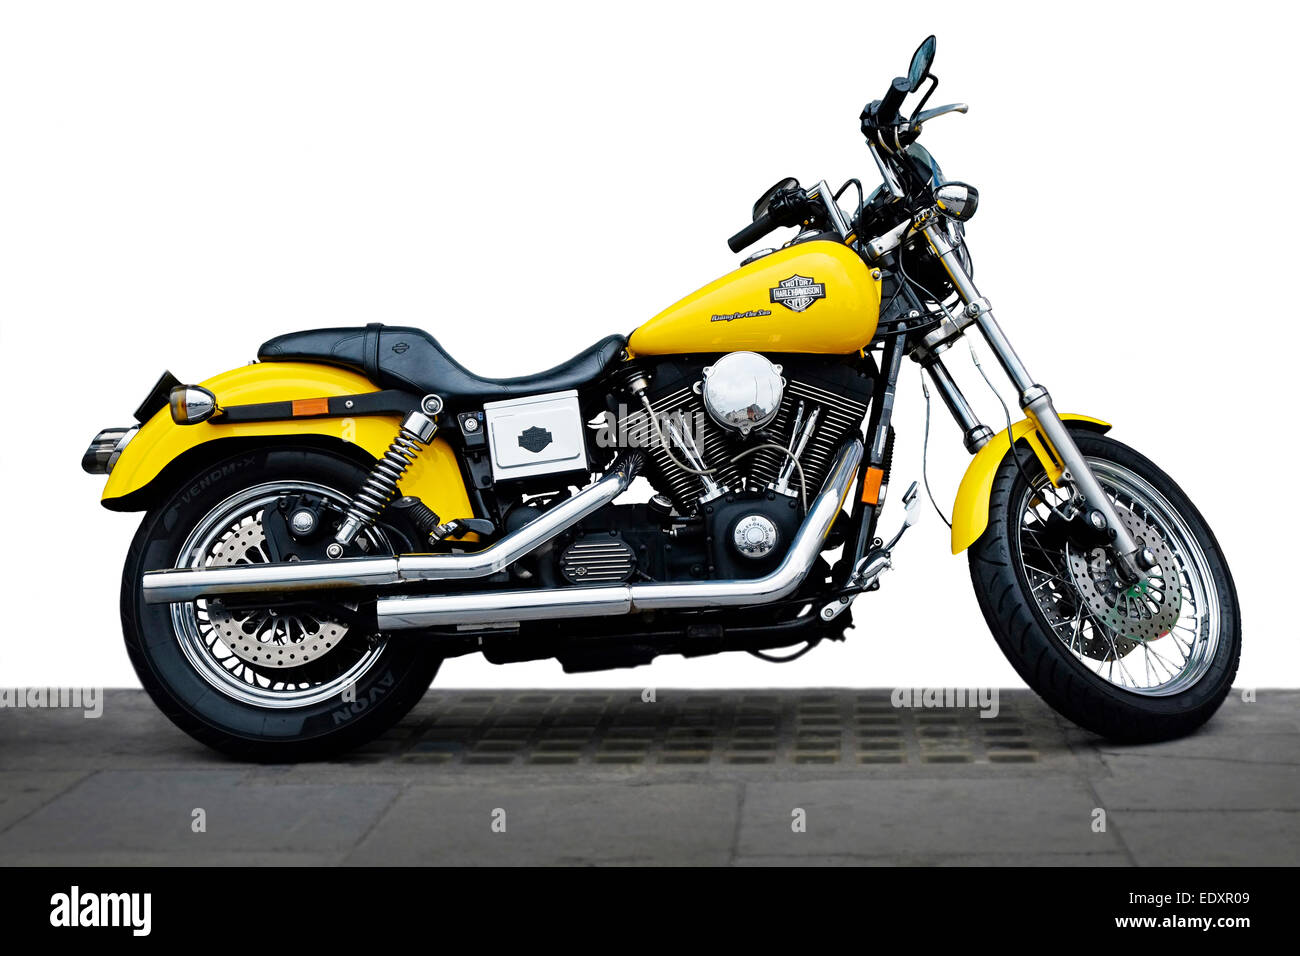 Harley Davidson Cruiser 1200 cc moto corte parcial y Amarillo cromo, Dublin  Street Fotografía de stock - Alamy